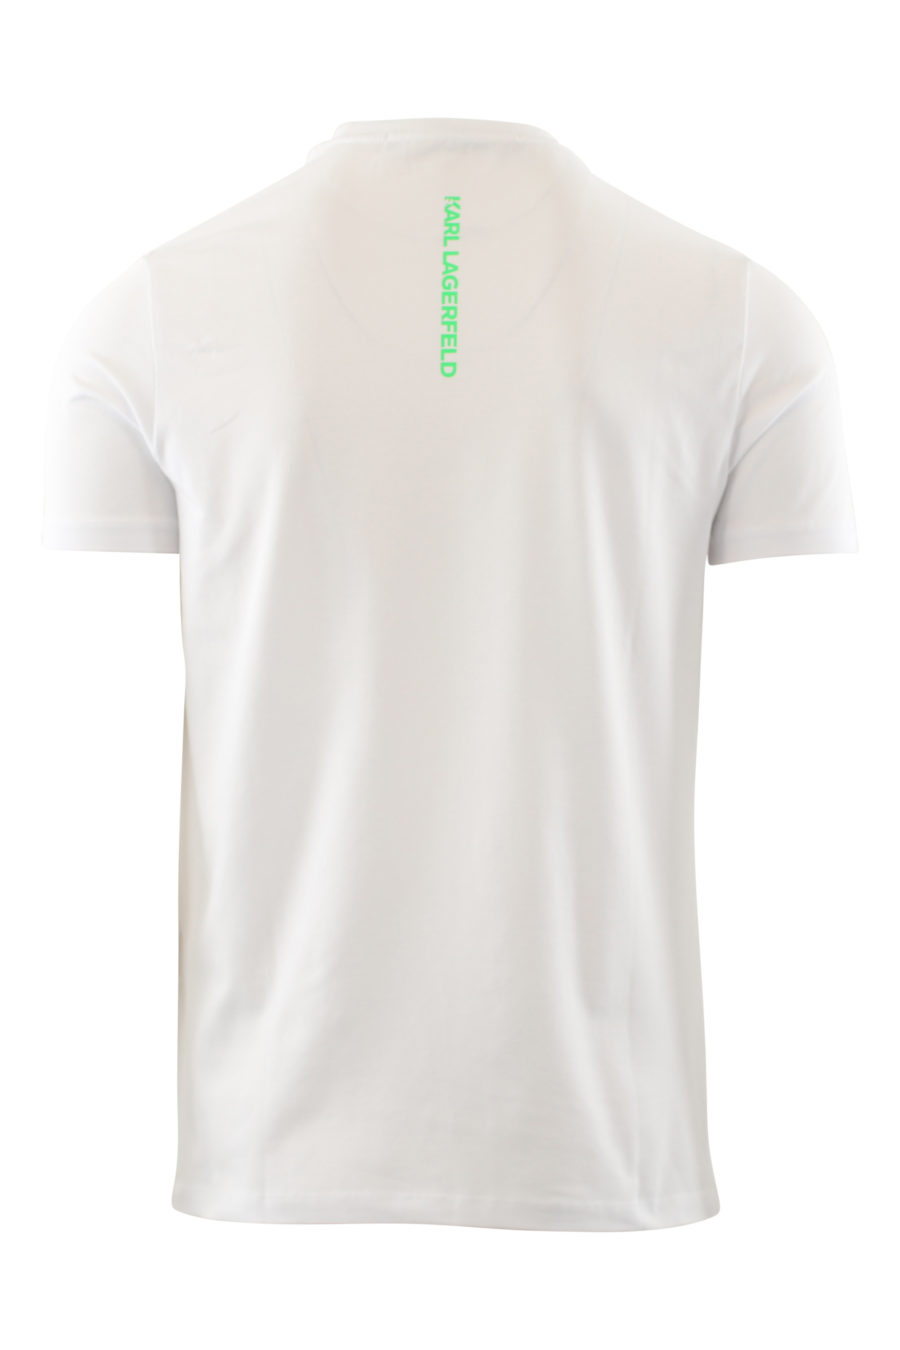 Camiseta blanca con logo en multicolores - IMG 6524